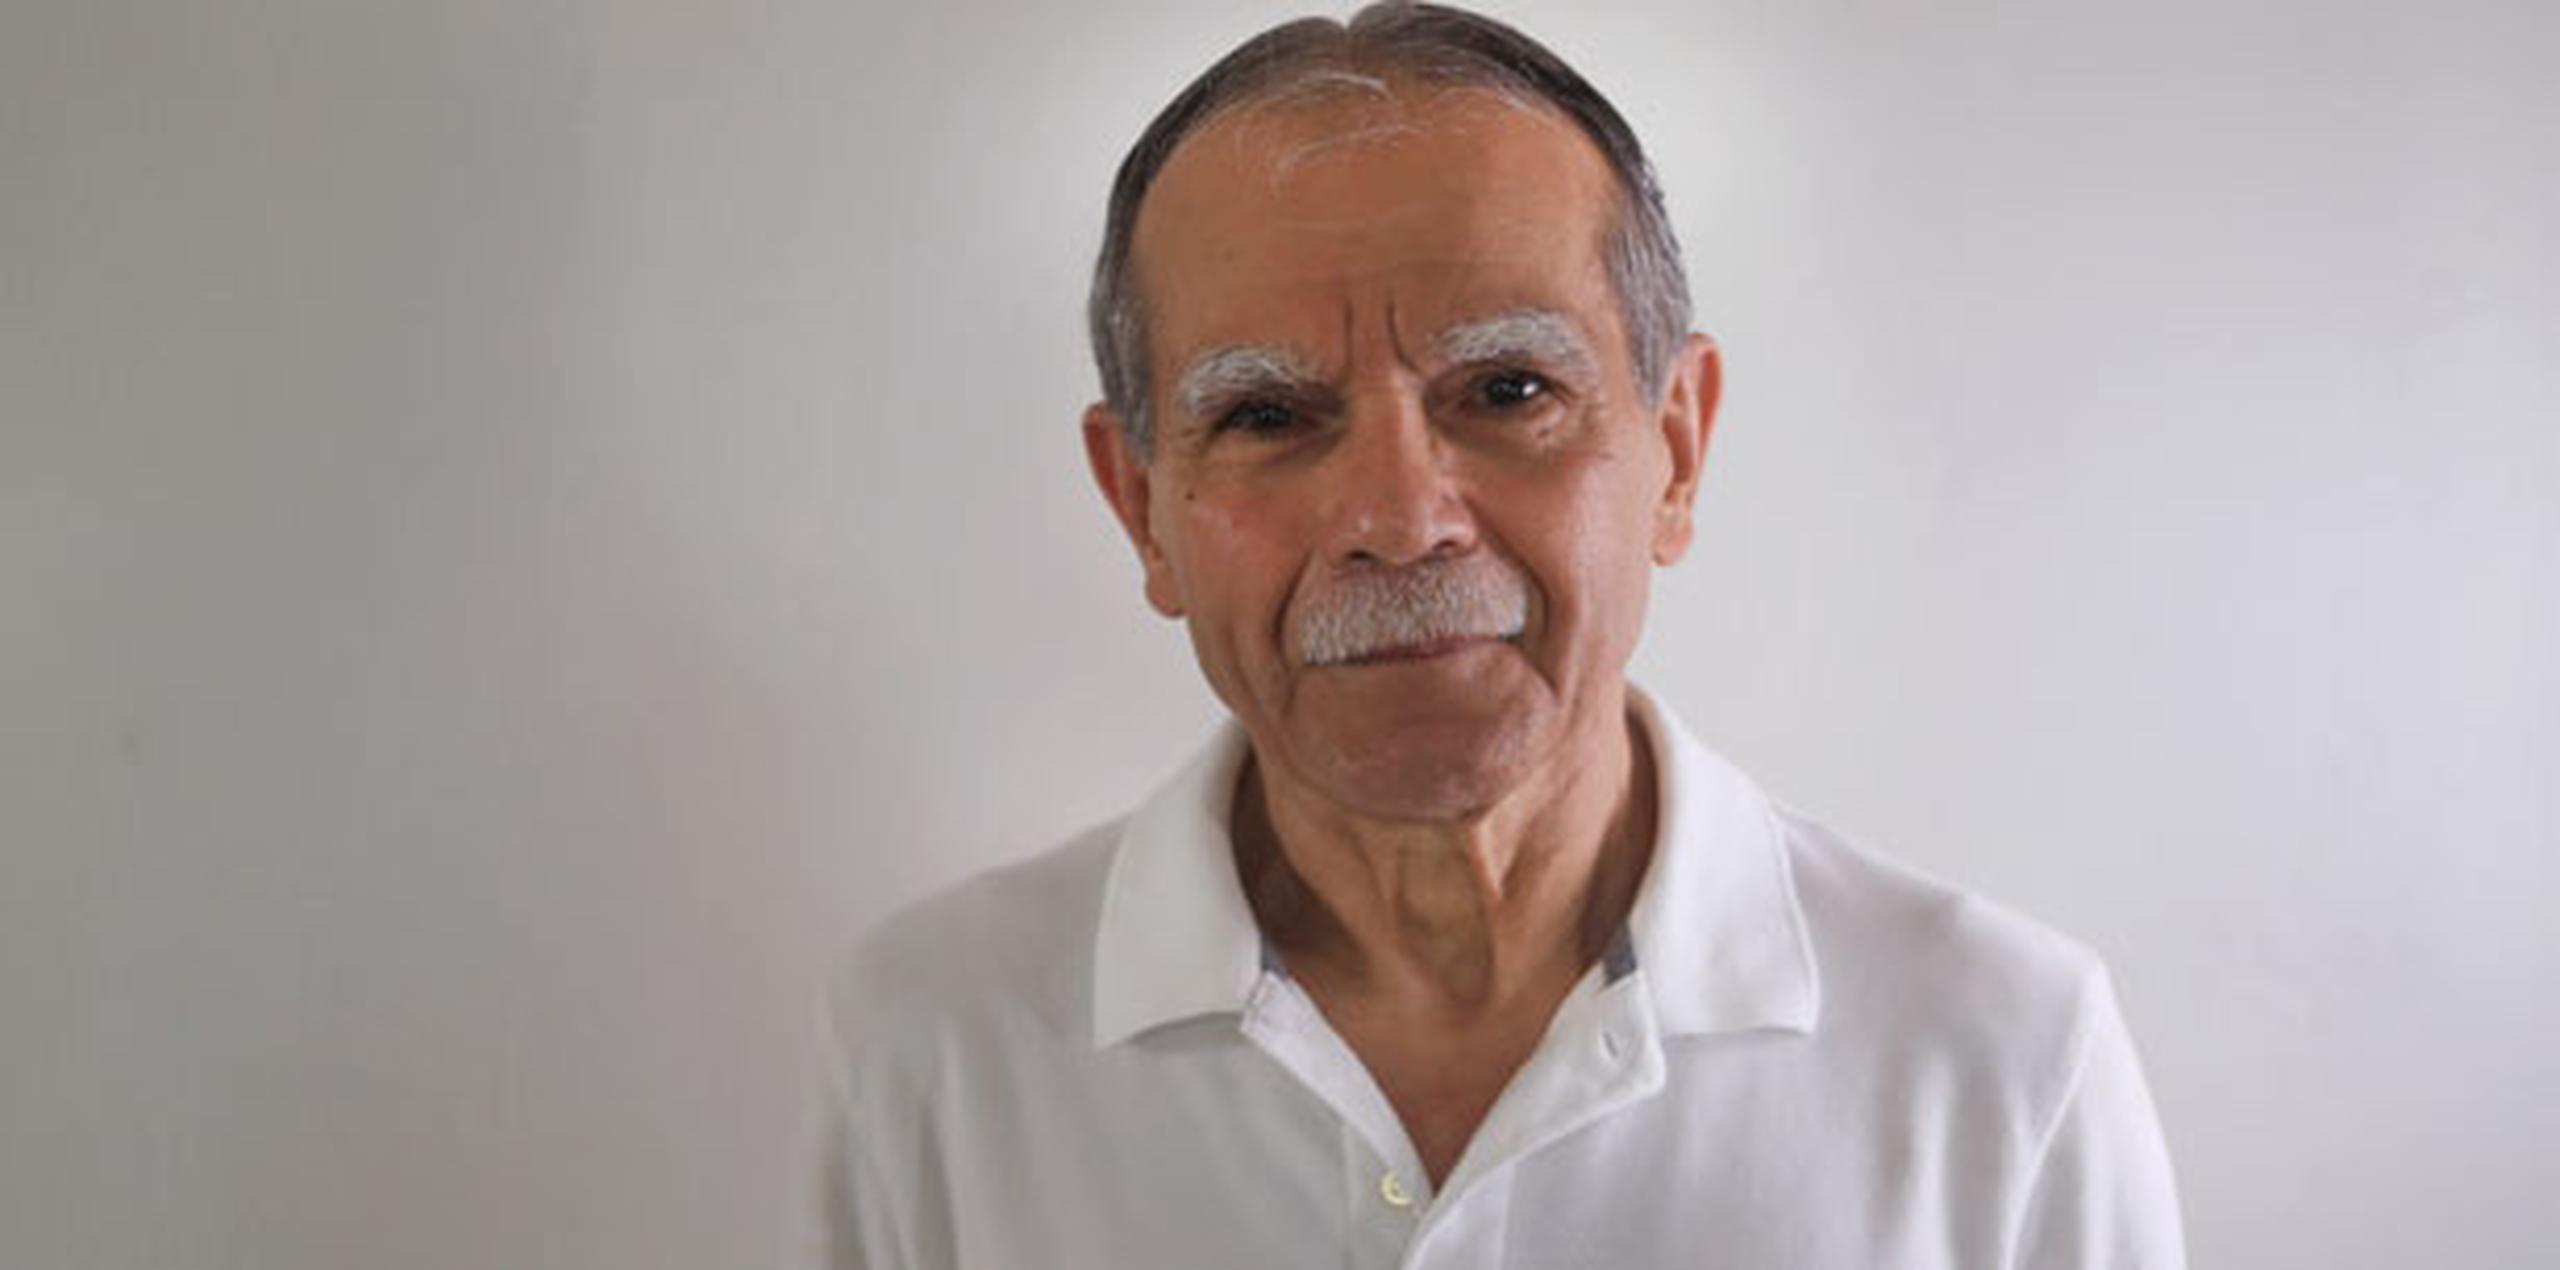 López Rivera caminará el 11 de junio por la Quinta Avenida “como un humilde puertorriqueño y abuelo de 74 años”. (Archivo)